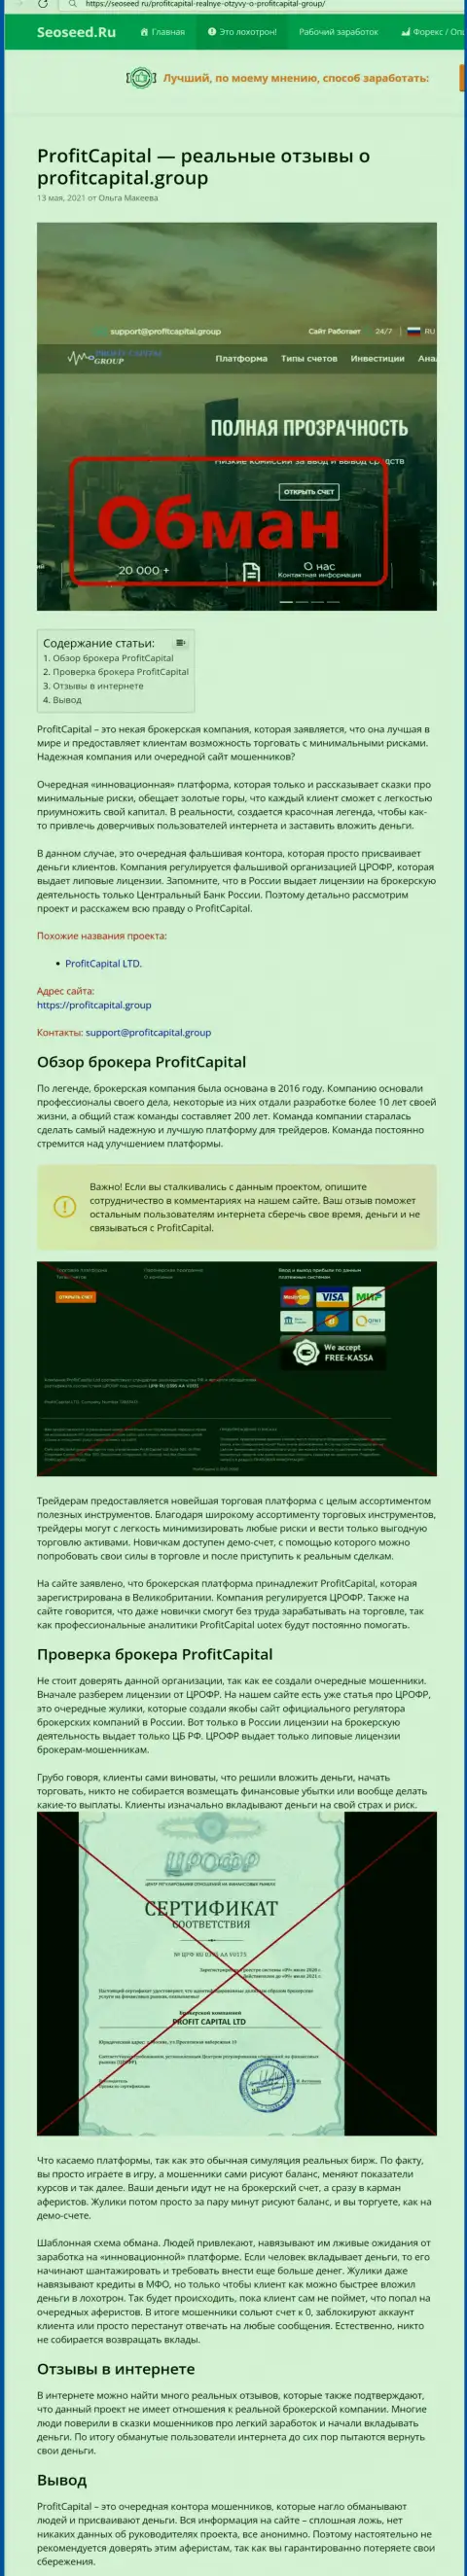 Profit Capital Group ОБВОРОВЫВАЮТ !!! Факты незаконных деяний